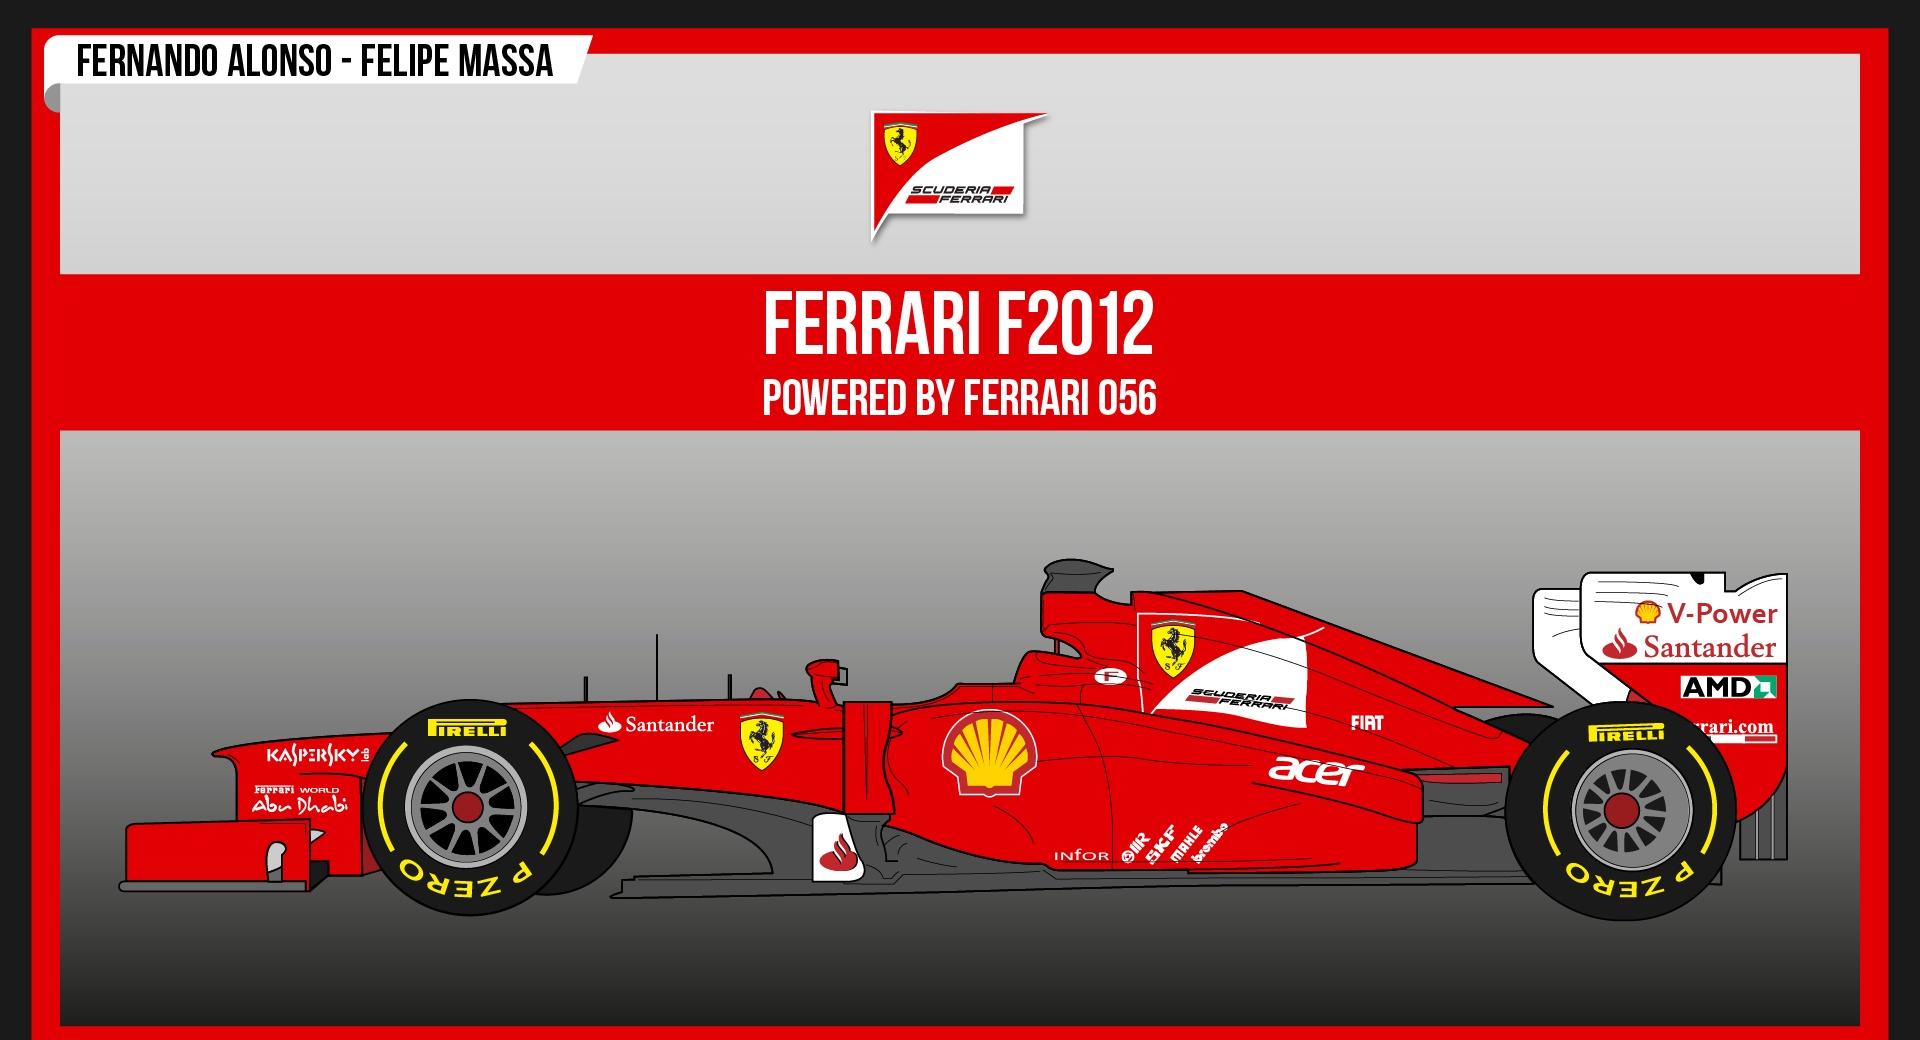 Ferrari F2012 at 1600 x 1200 size wallpapers HD quality